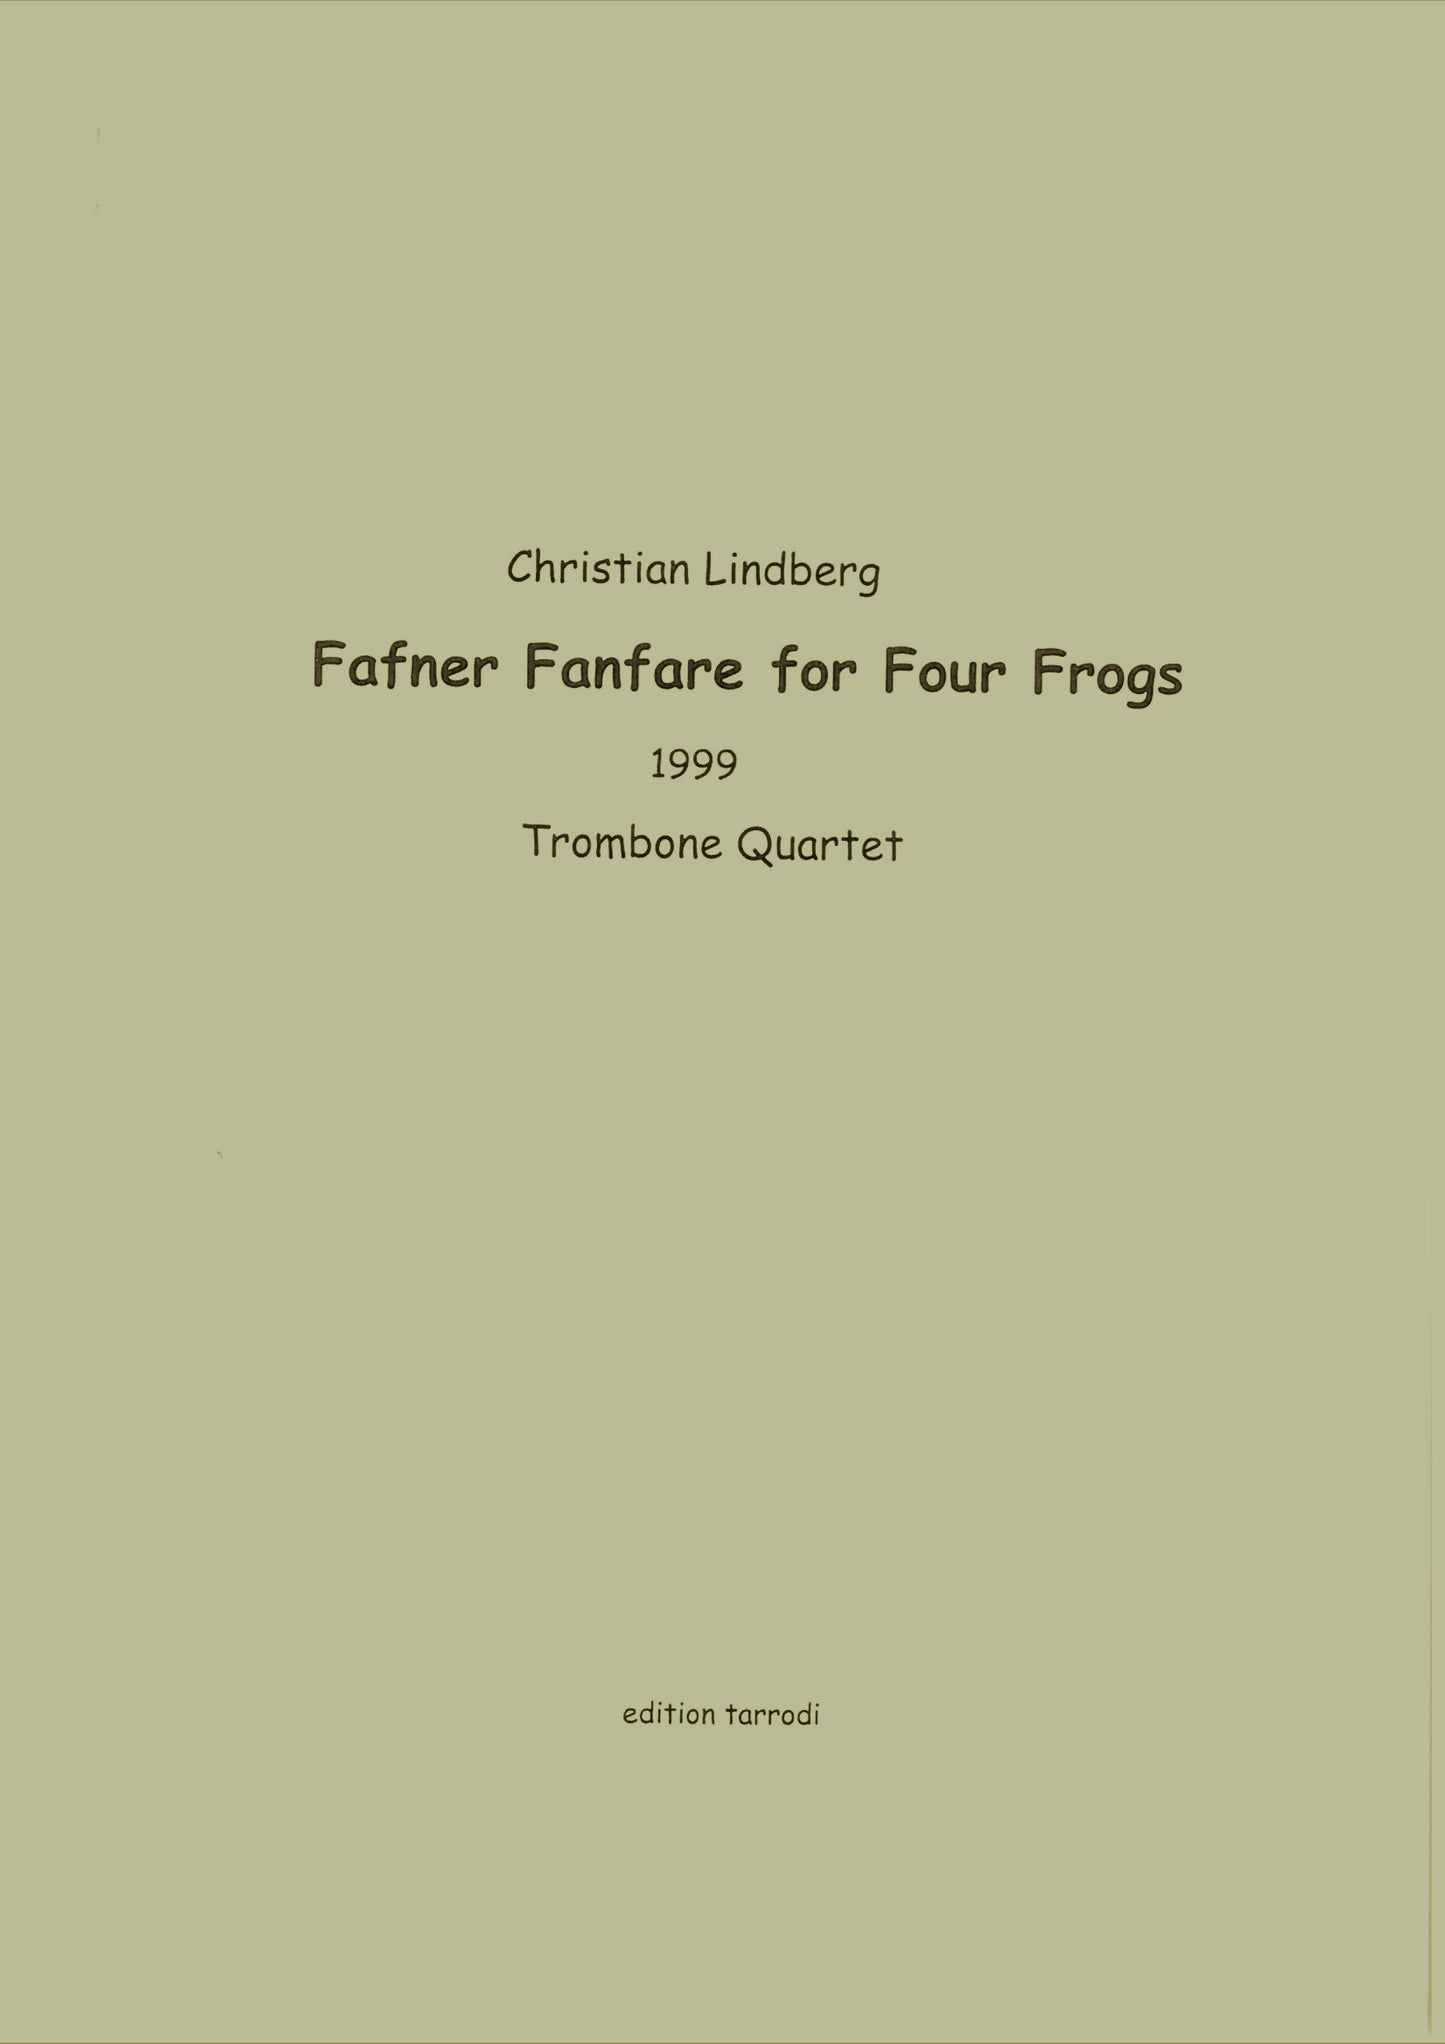 Christian Lindberg - Fafner Fanfare for Four Frogs, Trombone Quartet